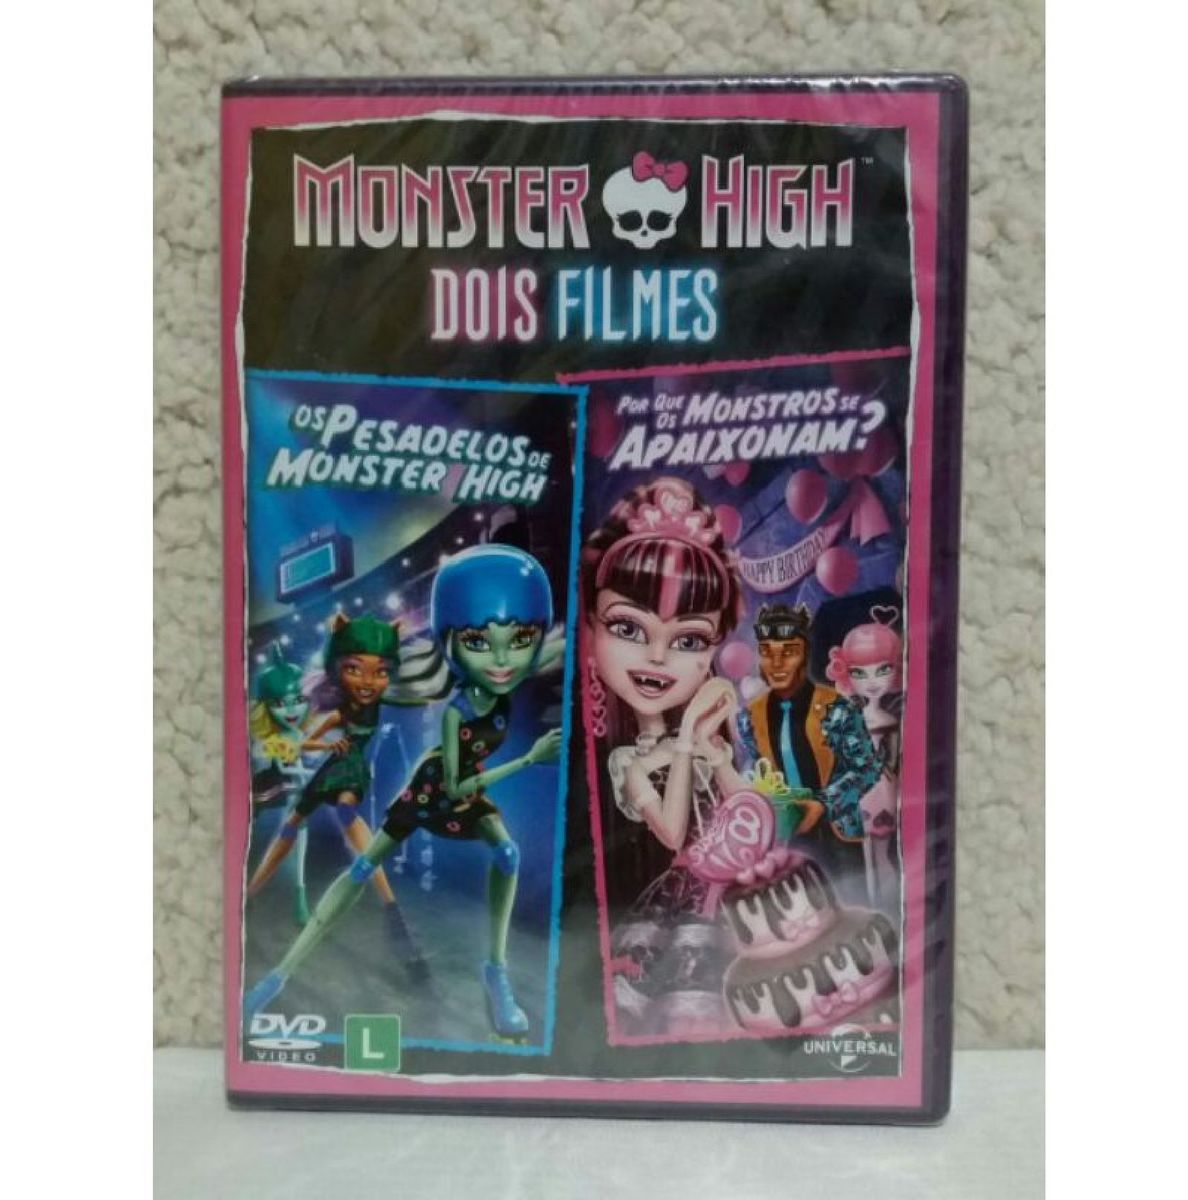 Dvd Monster High: comprar mais barato no Submarino